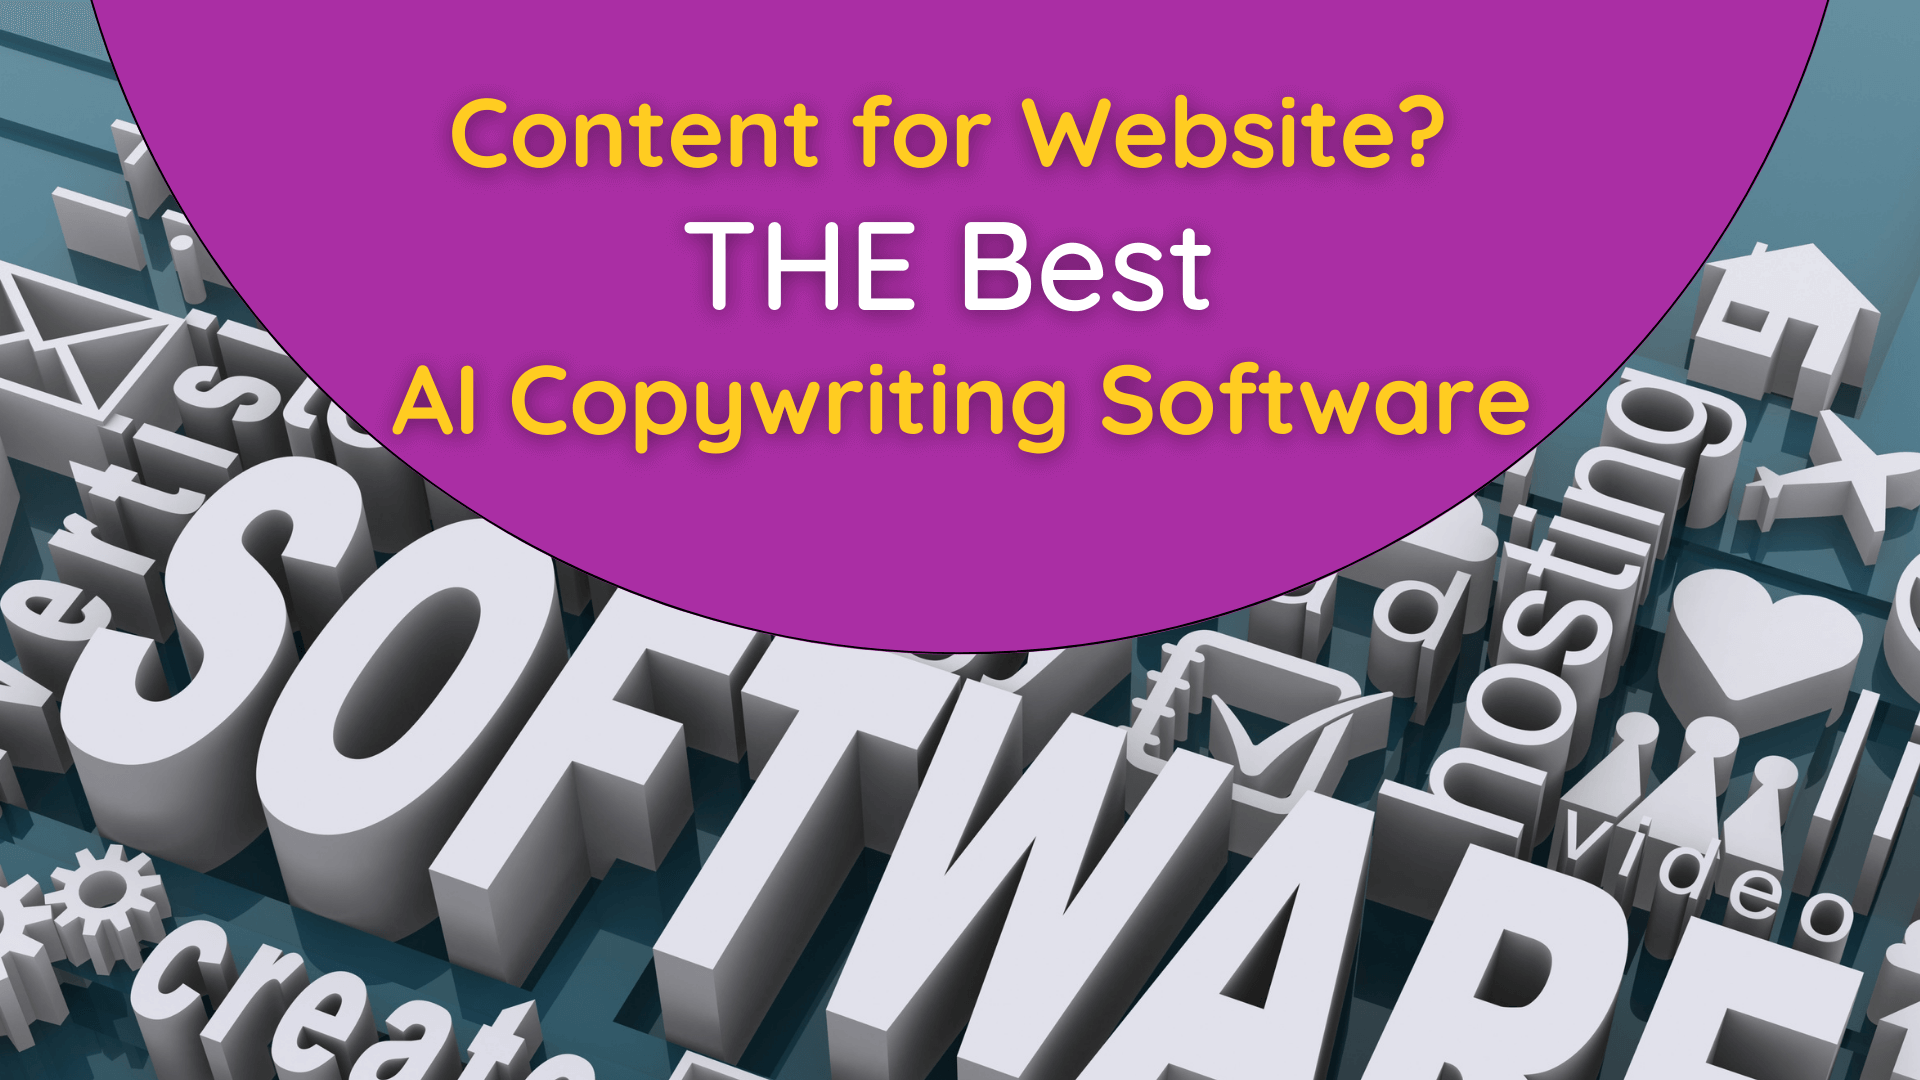 AI copywriting software